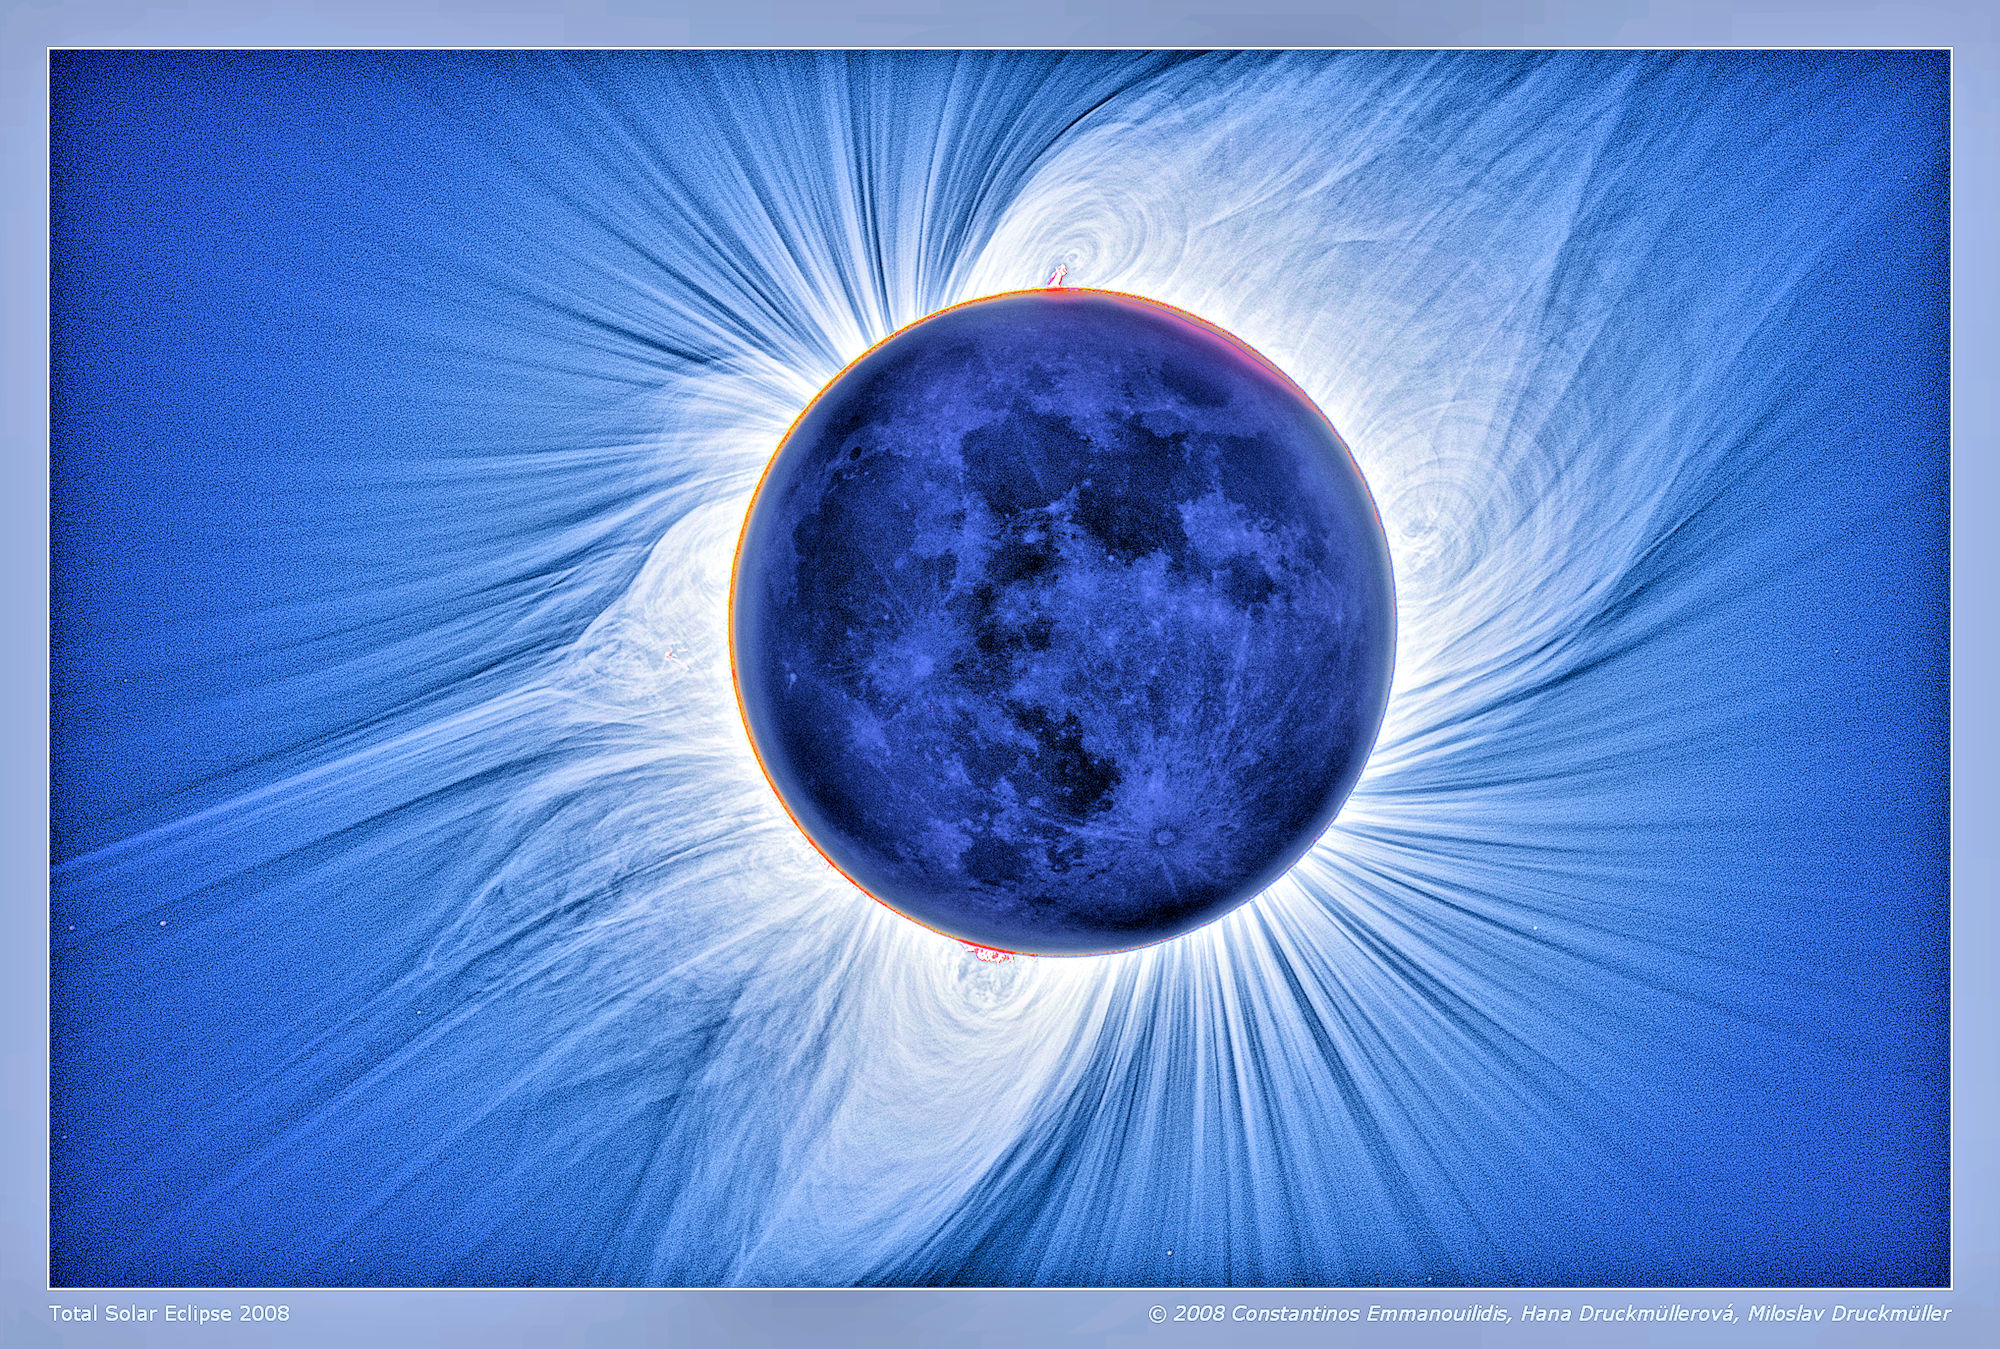 Солнечное затмение 2008 года. Солнечная корона. Рентгеновский снимок солнца. Рентгеновский снимок для солнечного затмения. Solo Eclipse.